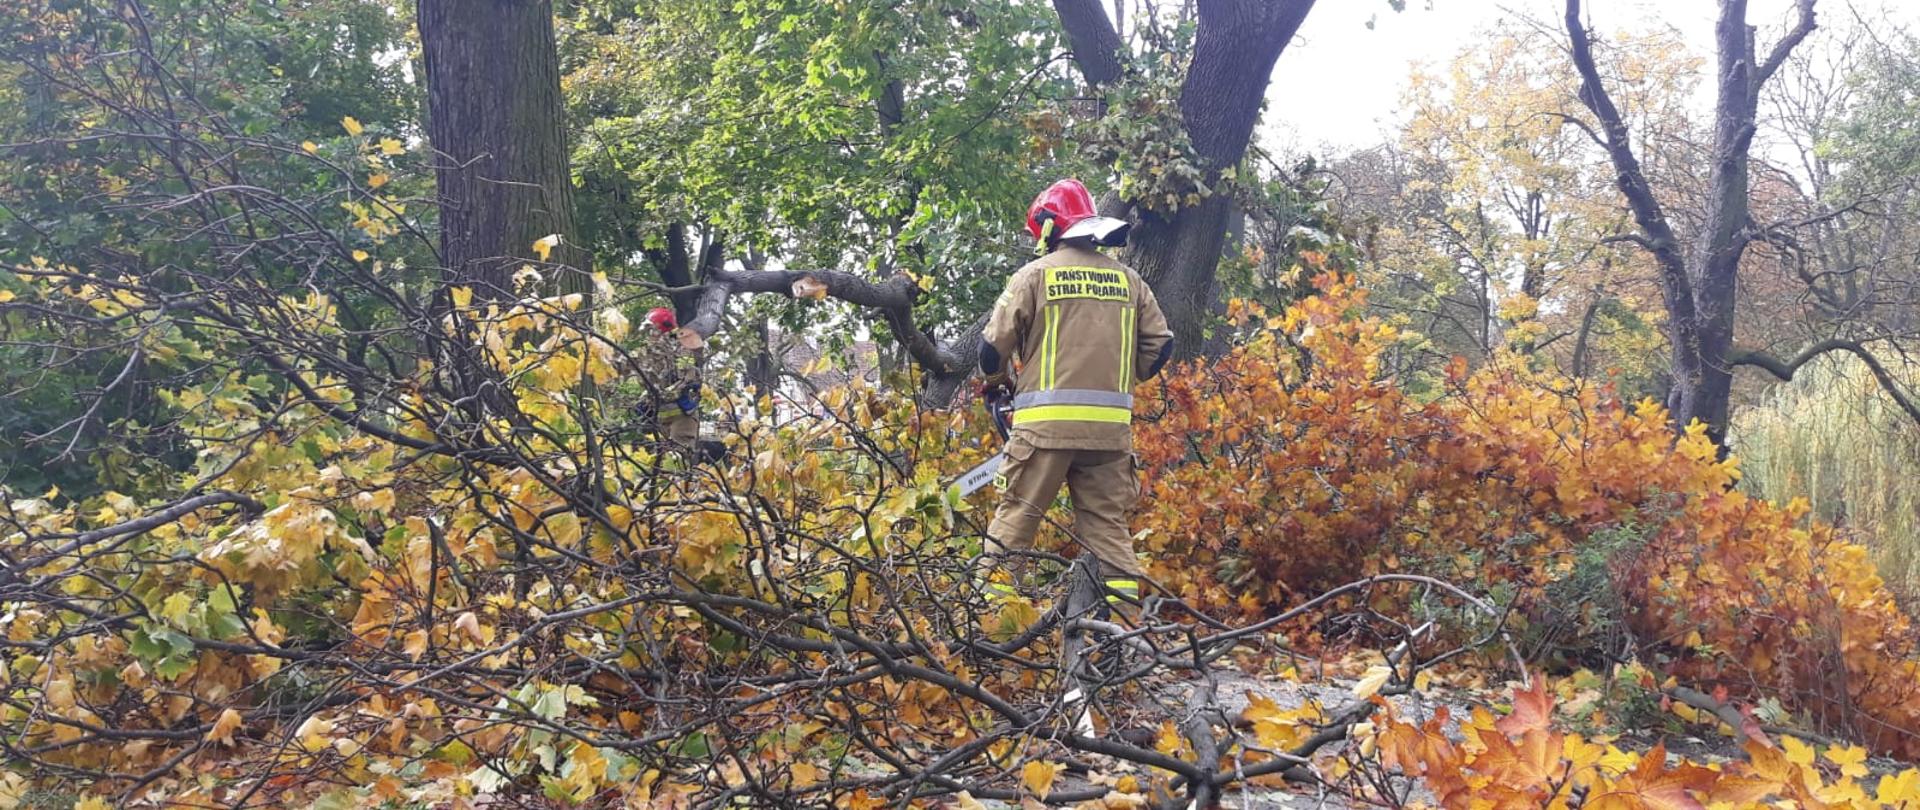 SILNE WIATRY NAD POWIATEM KOŚCIAŃSKIM. Na zdjęciu widać przewrócone drzewo, strażacy pracują przy nim, tnąc je na drobne kawałki, usuwają zagrożenie.